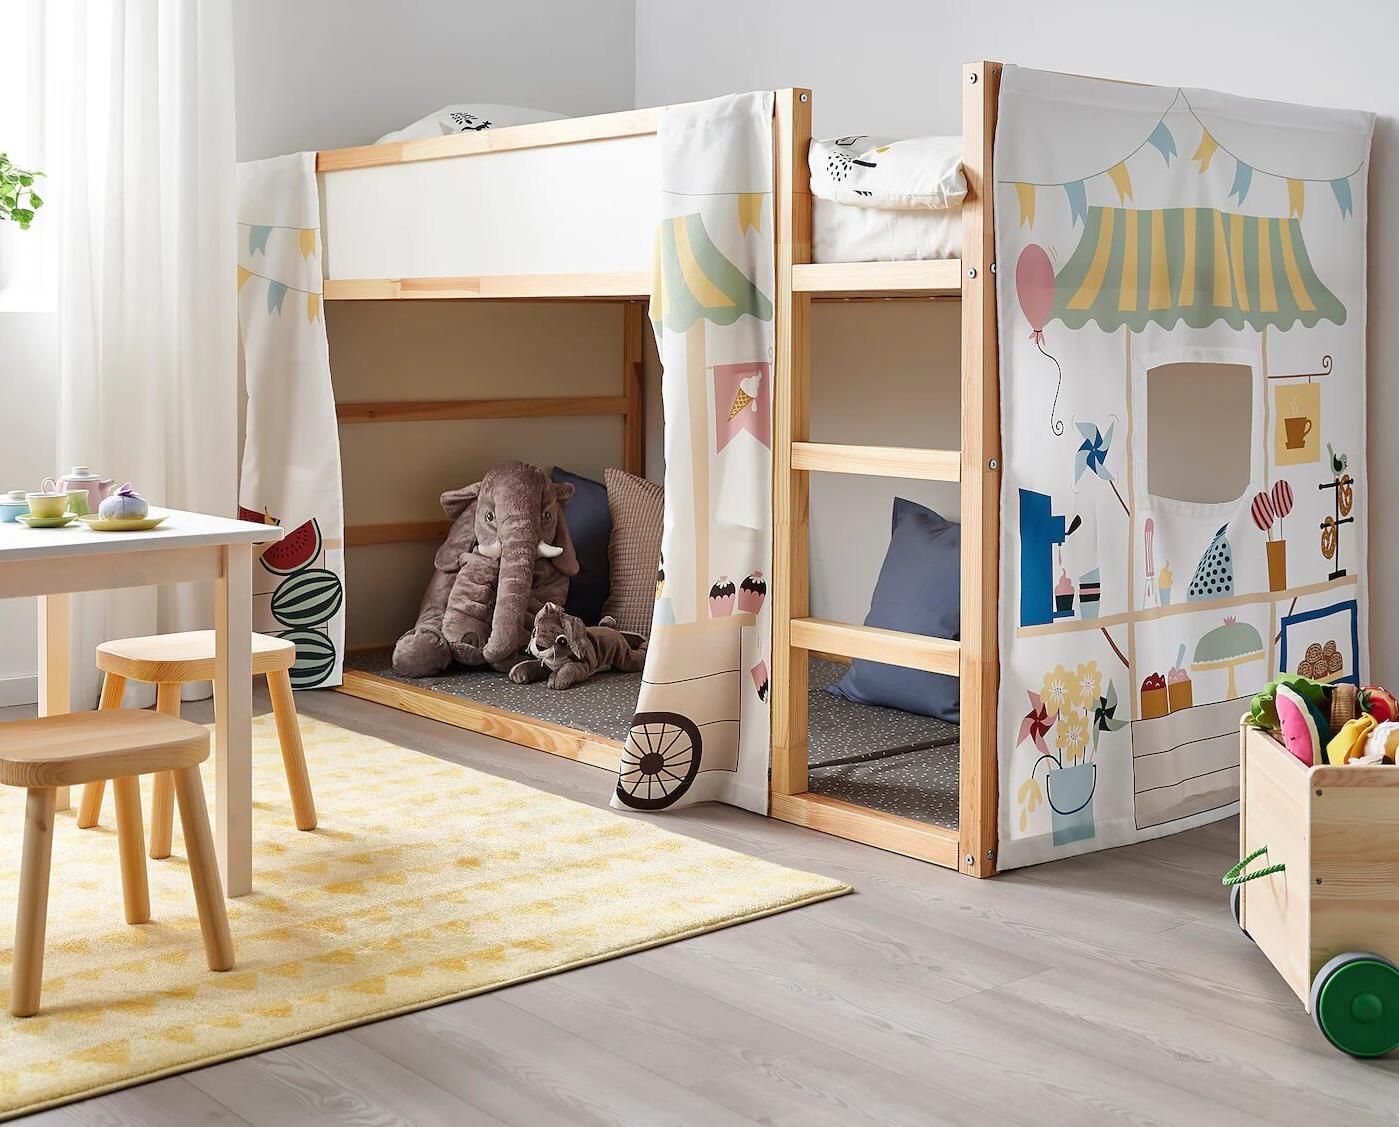 Cama Kura Ikea | Un mueble que no resta espacio de juego